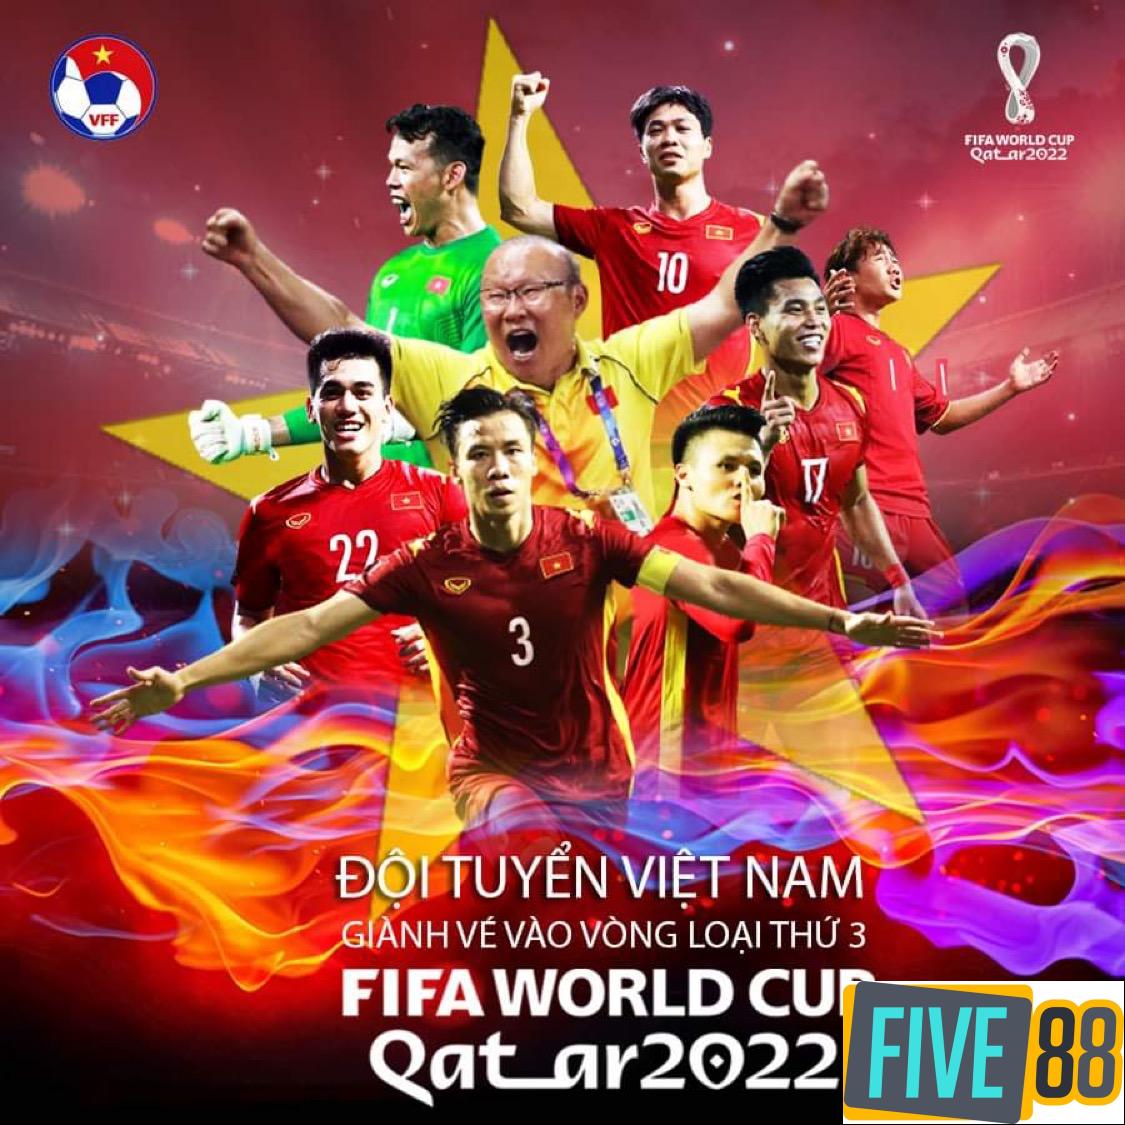 Dấu ấn và thành tích thi đấu của bóng đá Việt Nam 2021